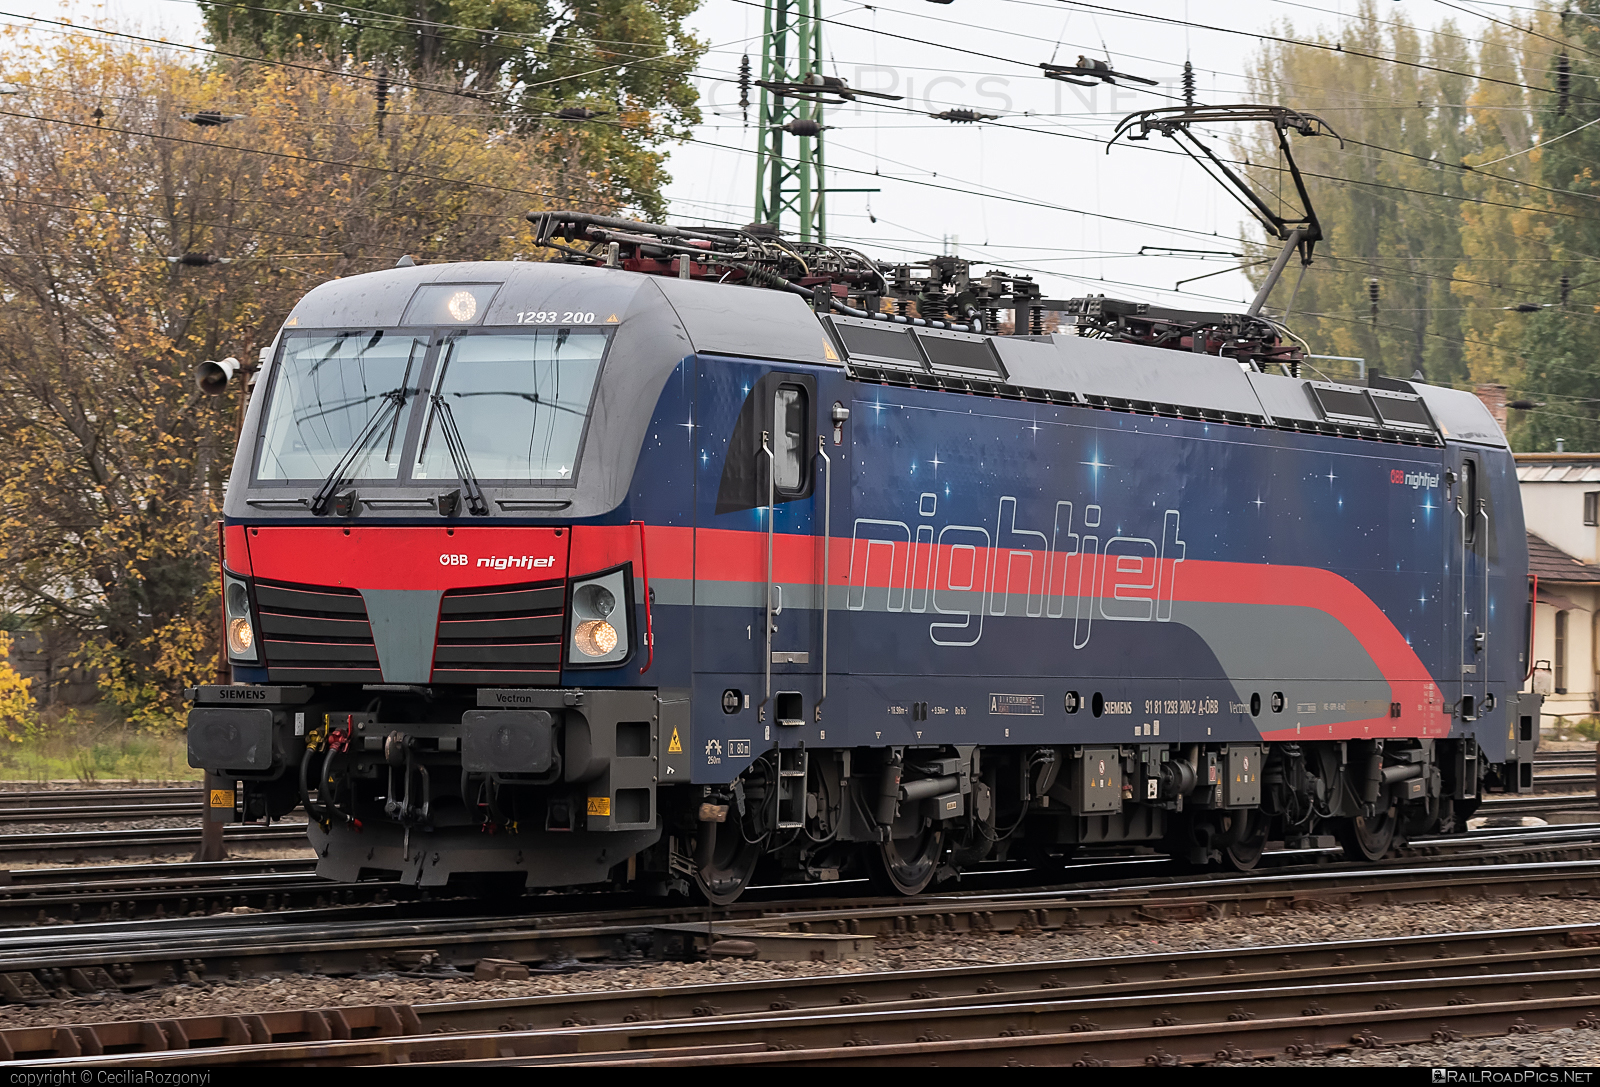 Siemens Vectron MS - 1293 200 operated by Rail Cargo Austria AG #nightjet #obb #osterreichischebundesbahnen #rcw #siemens #siemensVectron #siemensVectronMS #vectron #vectronMS